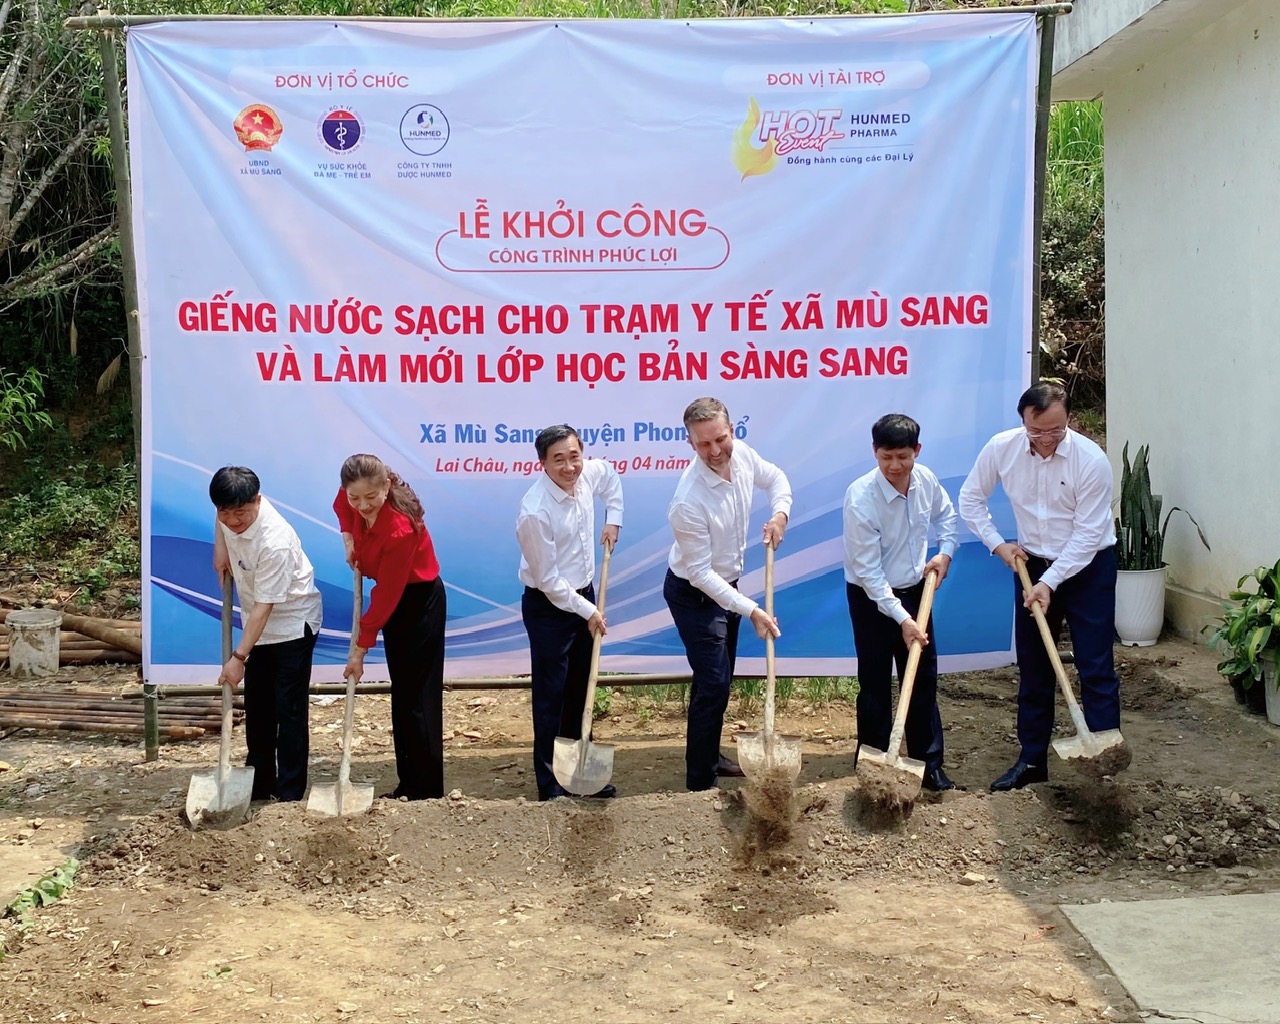 Thứ trưởng Bộ Y tế Trần Văn Thuấn cùng đoàn công tác, lãnh đạo Sở Y tế, lãnh đạo UBND huyện Phong Thổ tiến hành khởi công công trình giếng nước sạch cho Trạm y tế xã Mù Sang và làm mới lớp học bản Sàng Sang.